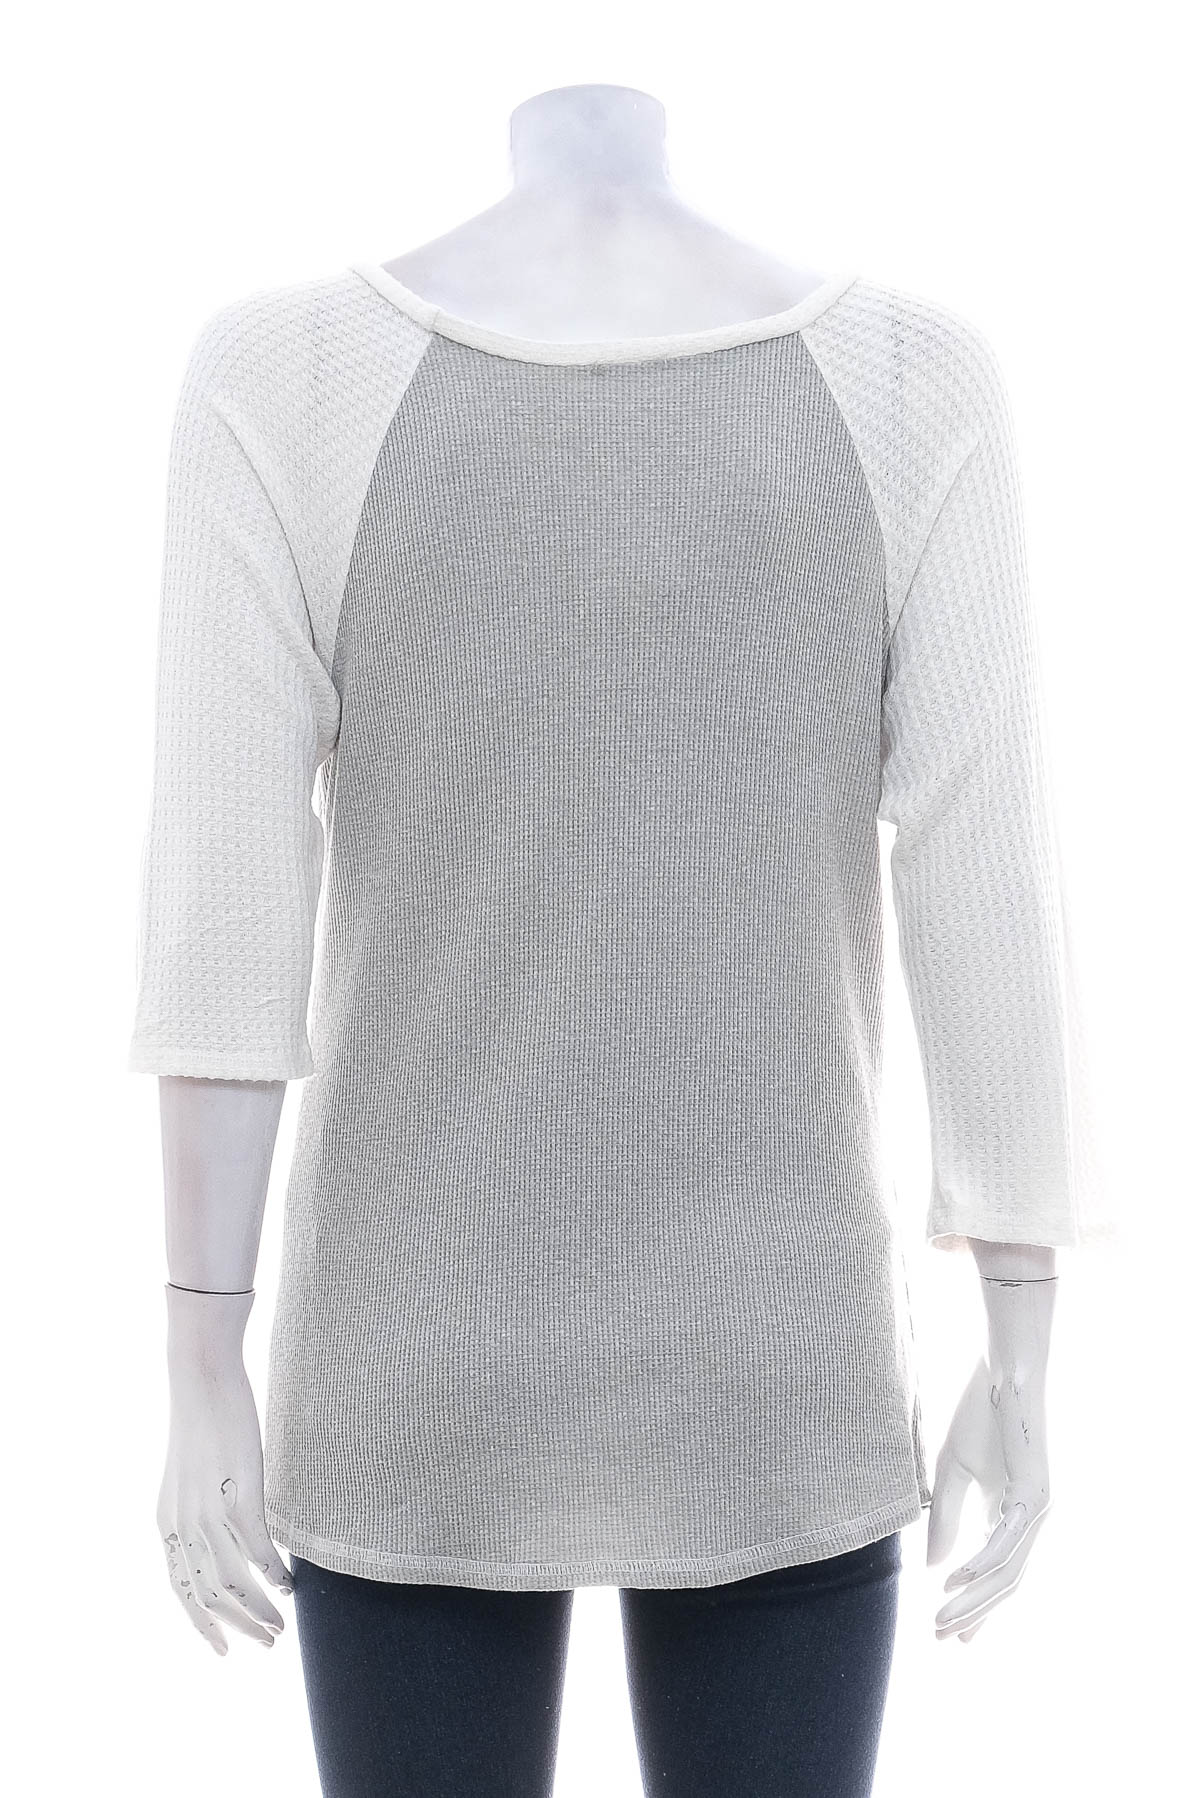 Women's sweater - Dee Elly - 1